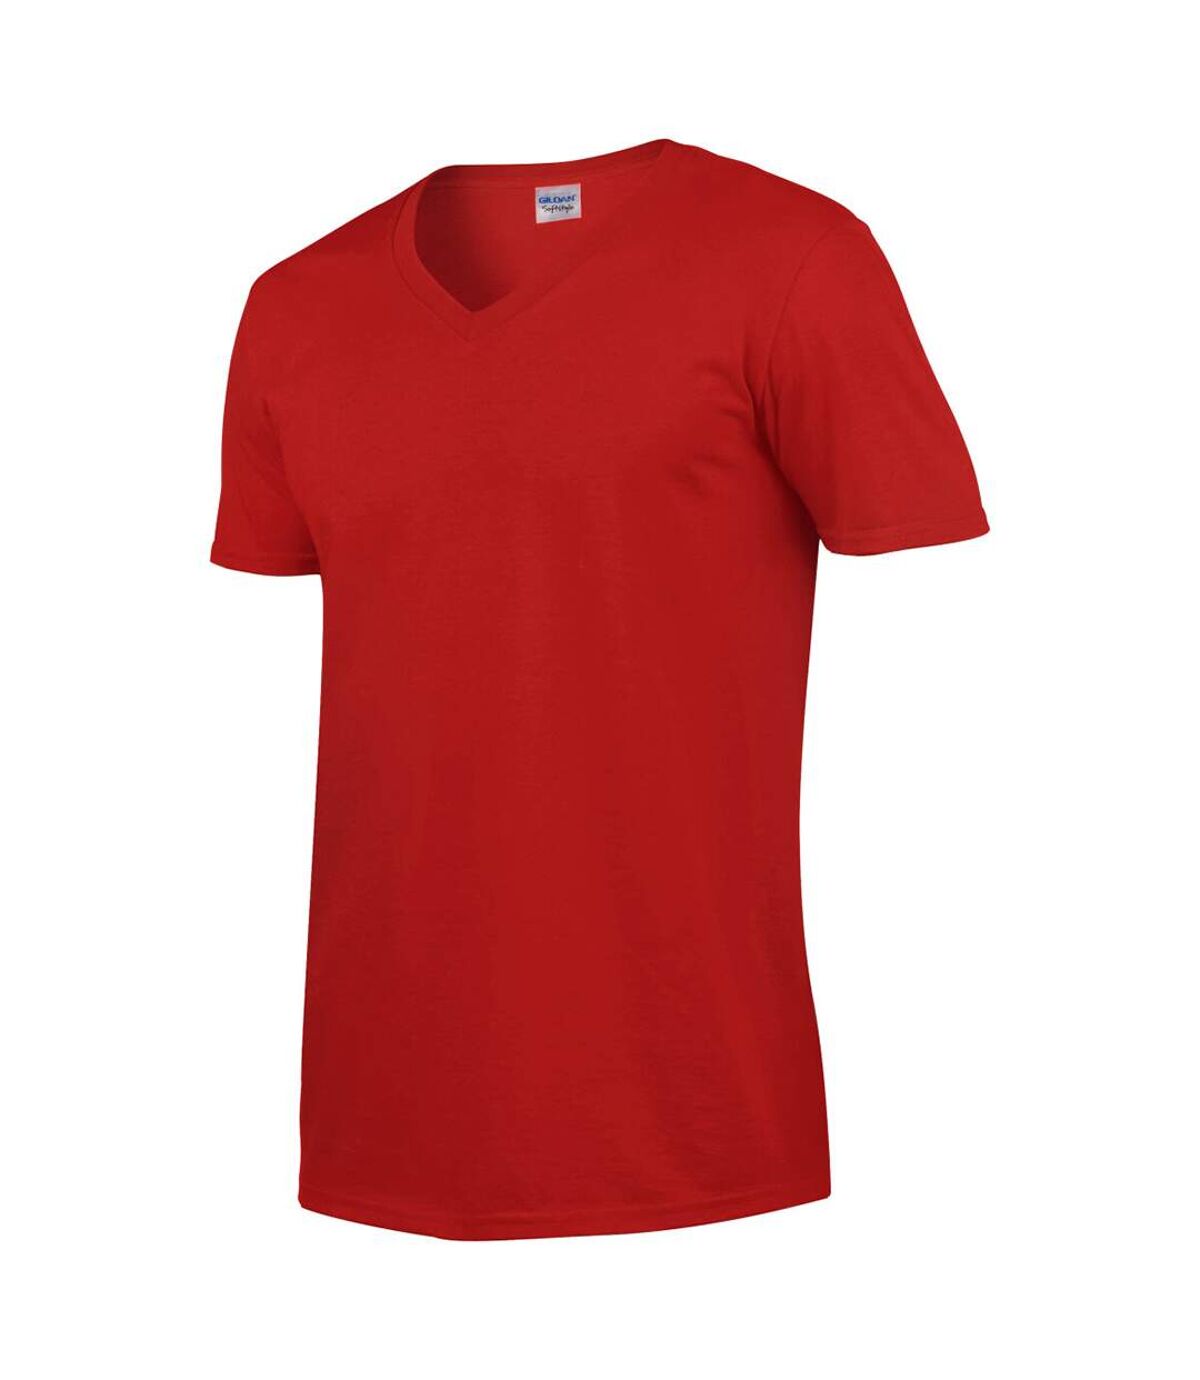 Gildan - T-shirt à manches courtes et col en V - Homme (Rouge) - UTBC490